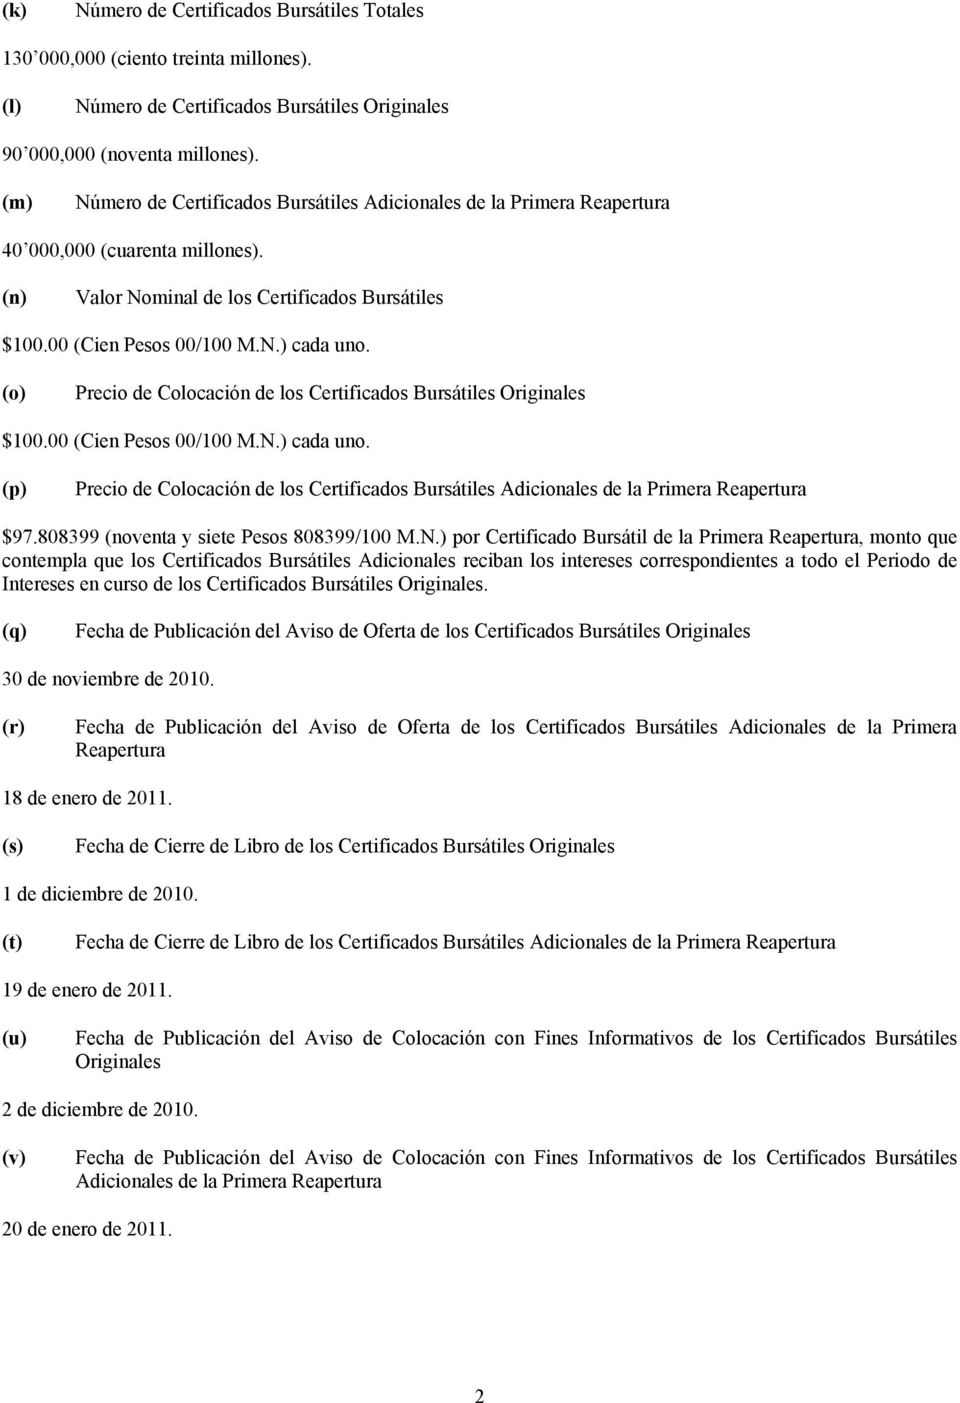 (o) Precio de Colocación de los Certificados Bursátiles Originales $100.00 (Cien Pesos 00/100 M.N.) cada uno.